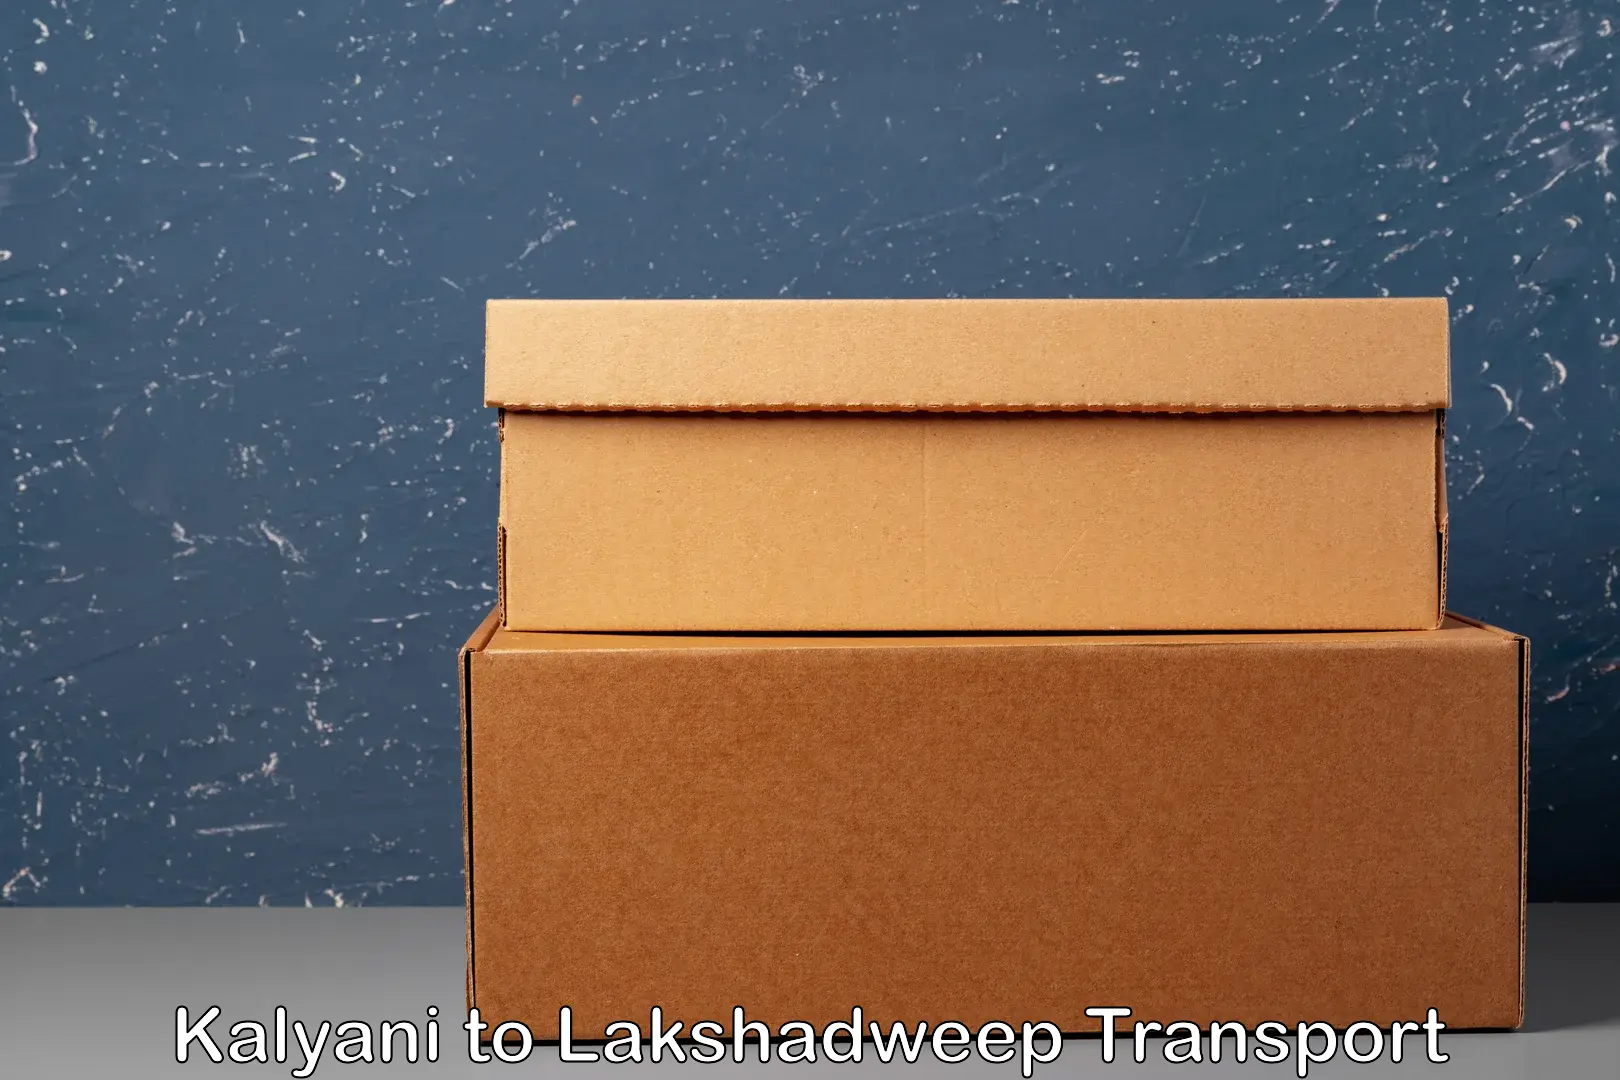 International cargo transportation services Kalyani to Lakshadweep